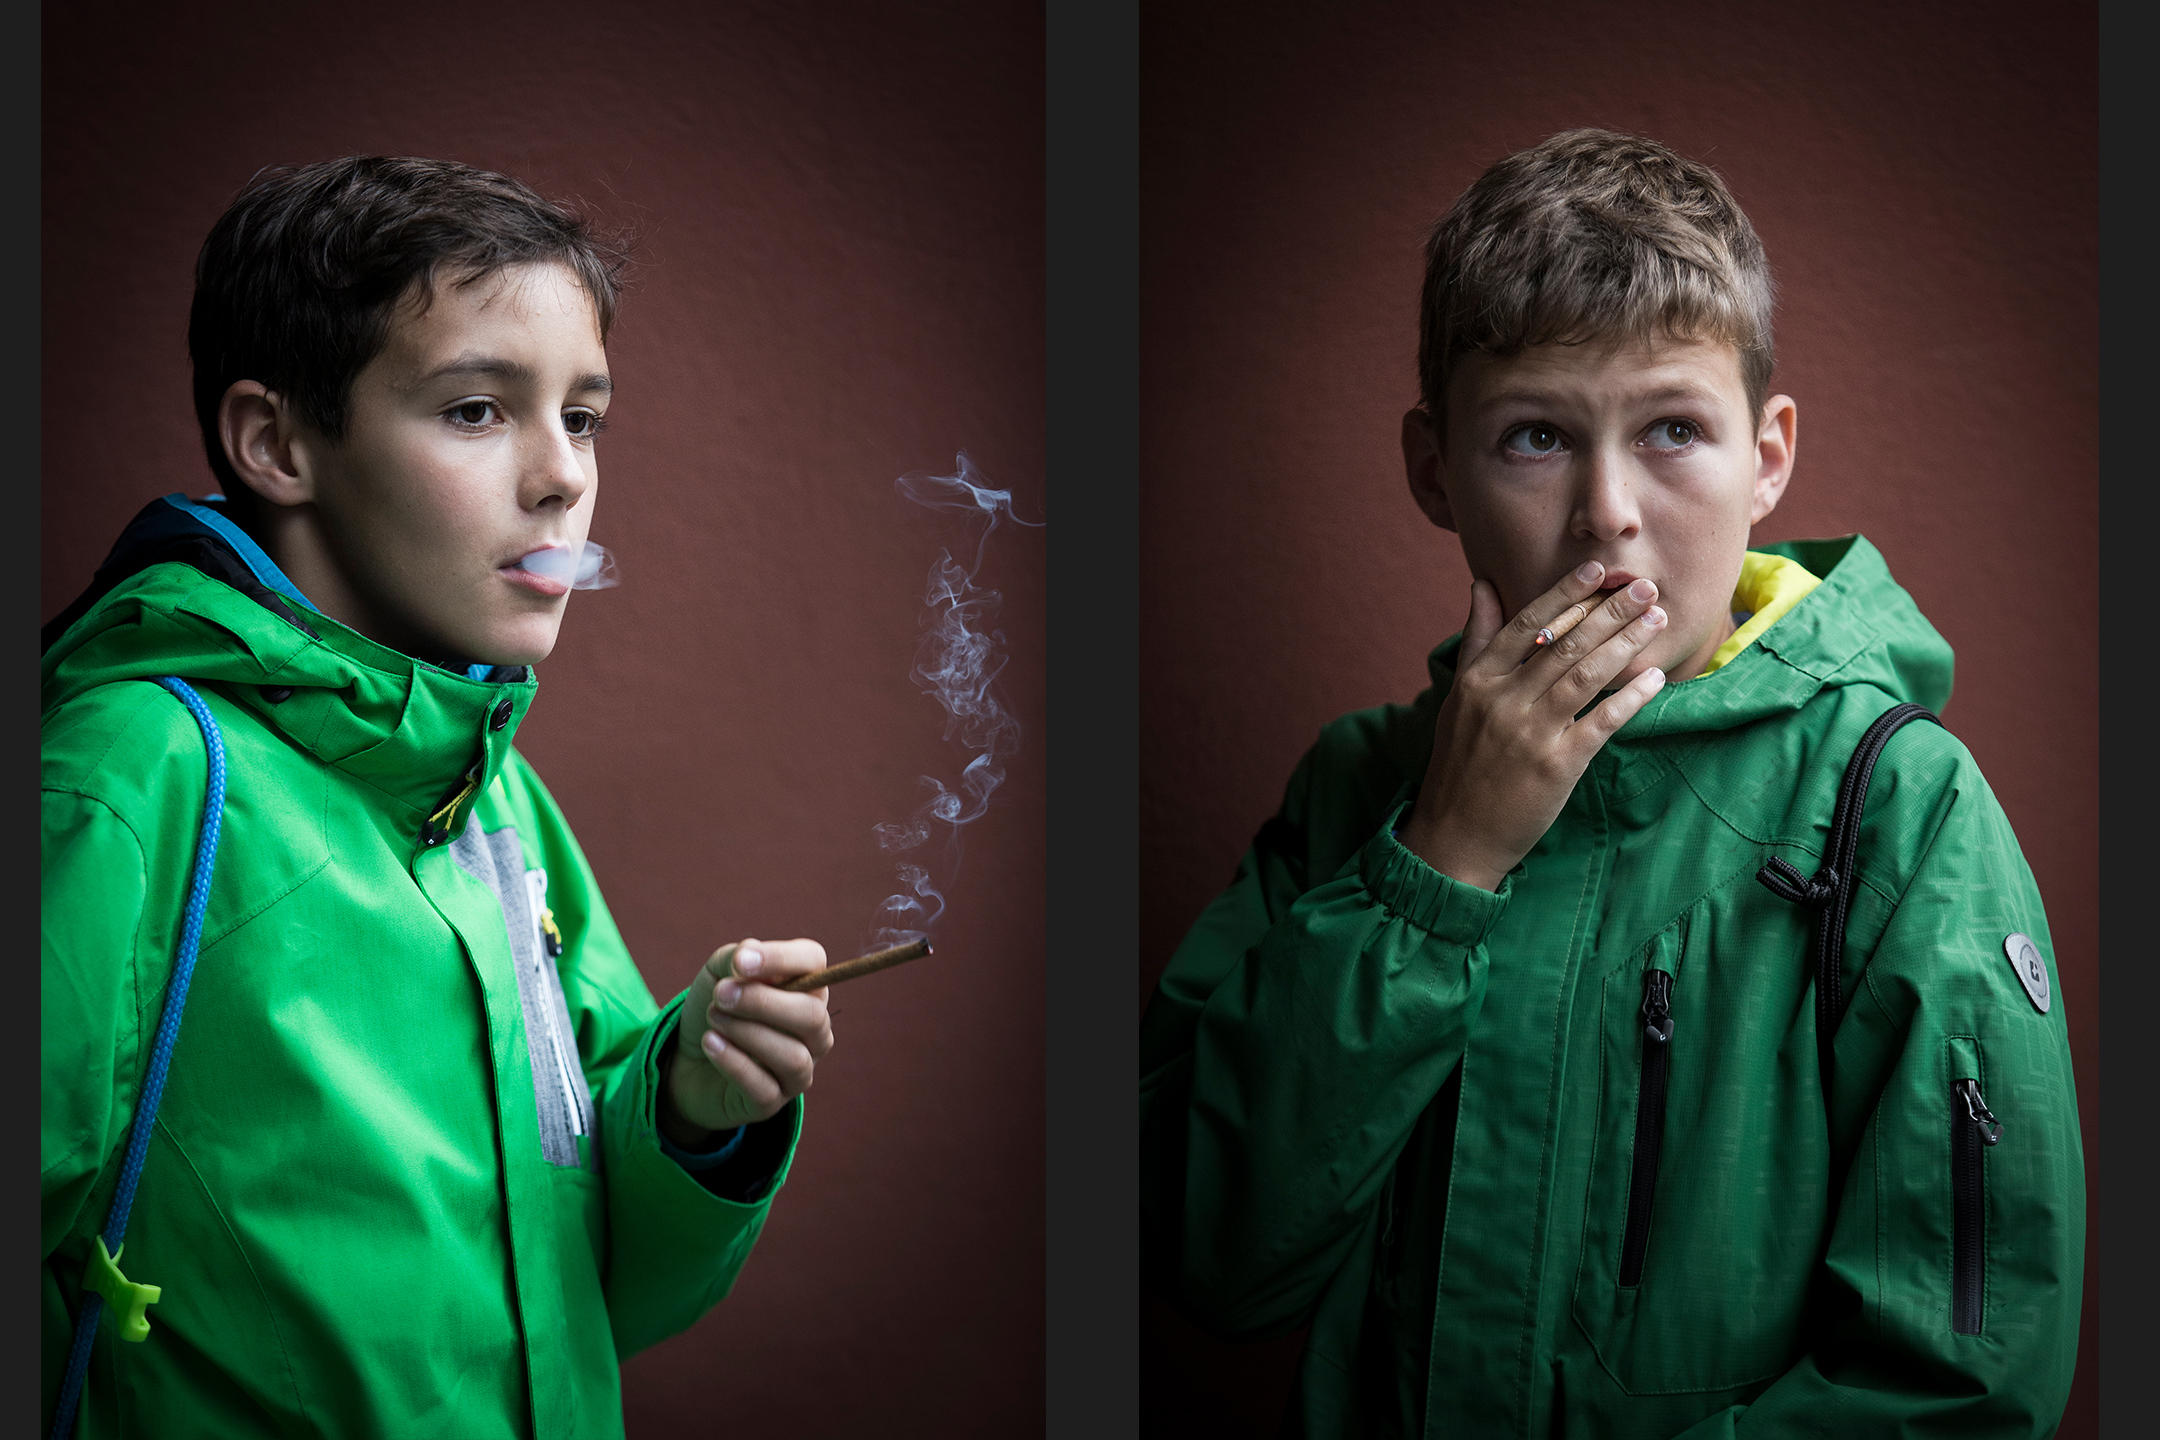 Zwei rauchende Kinder in grünen Jacken